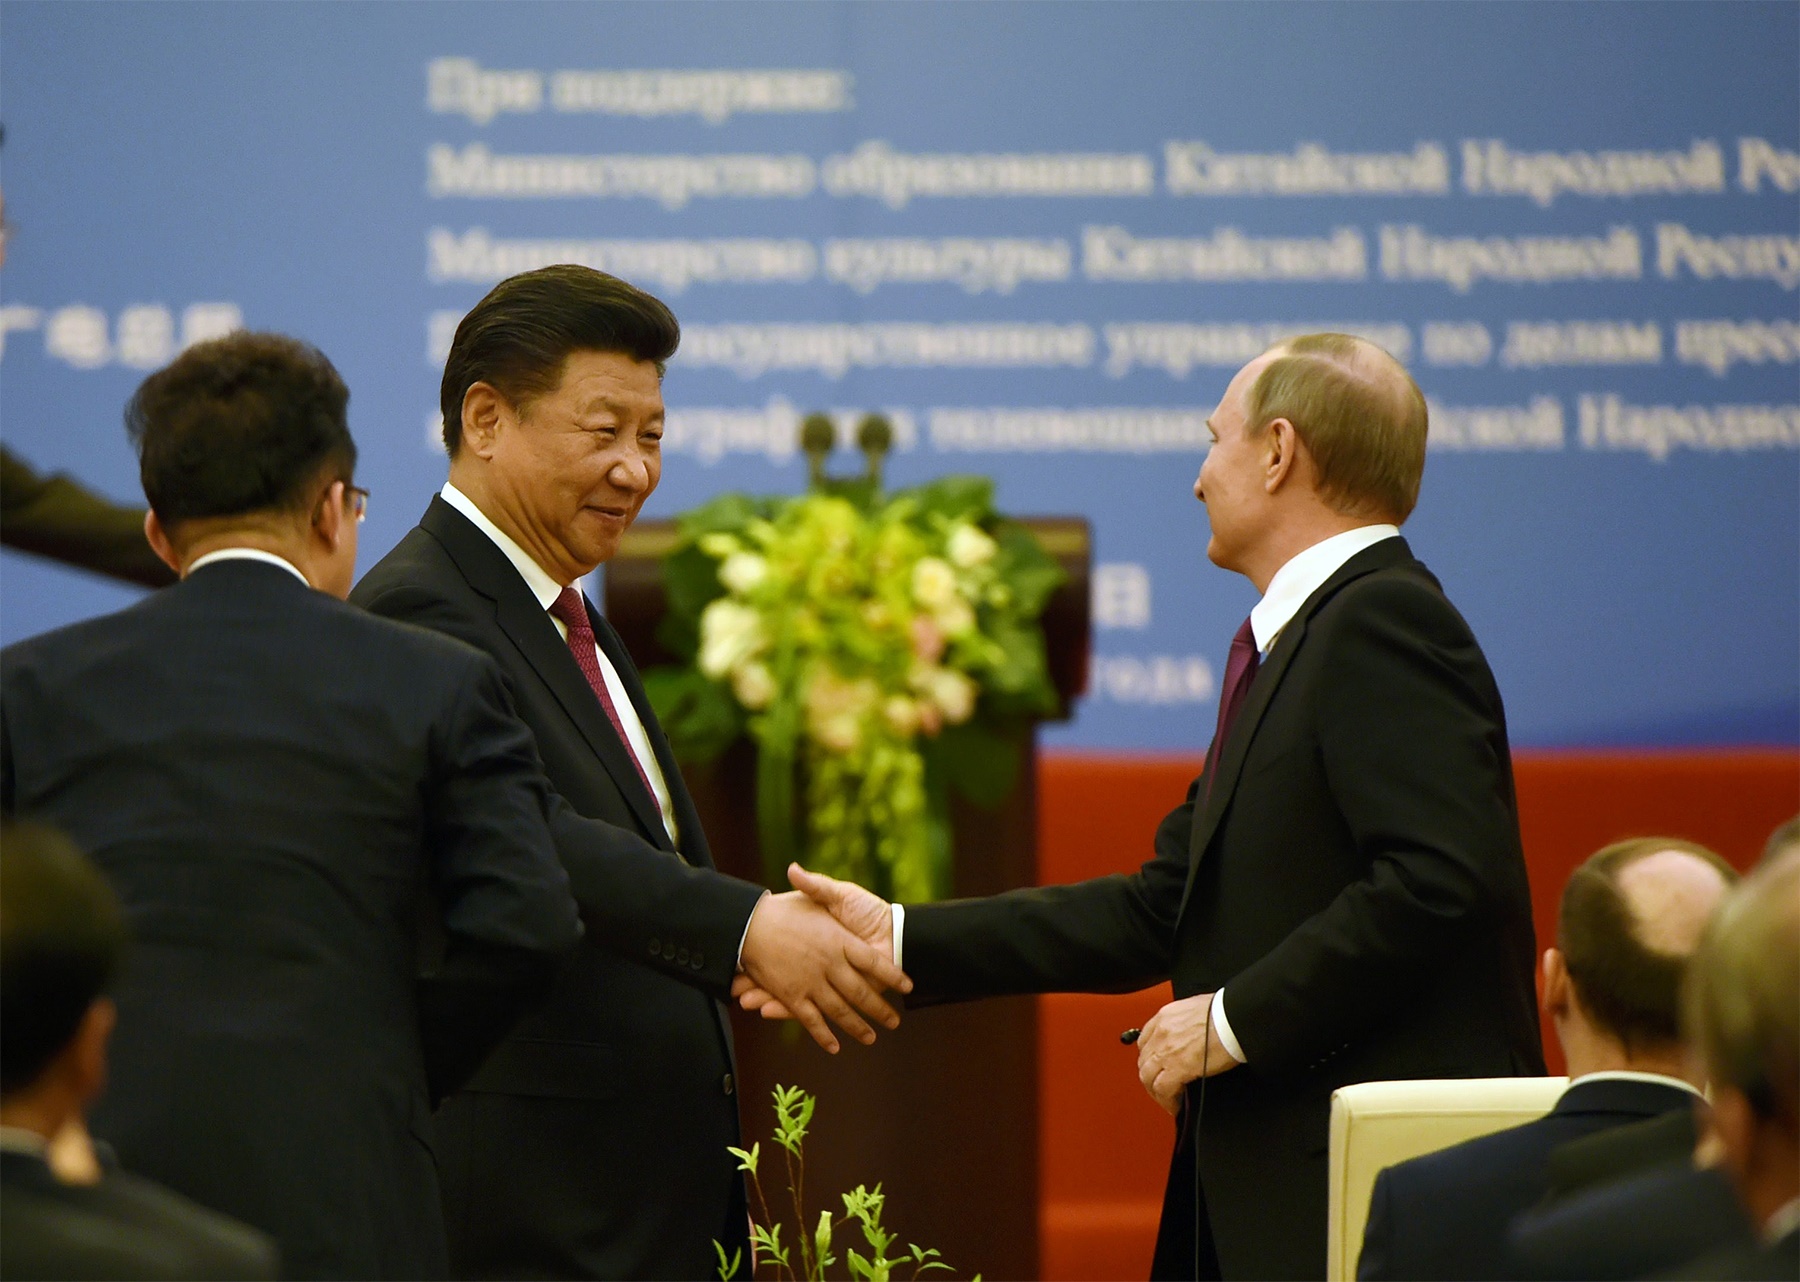 شرکت روسی چینی با مسئولیت جهانی